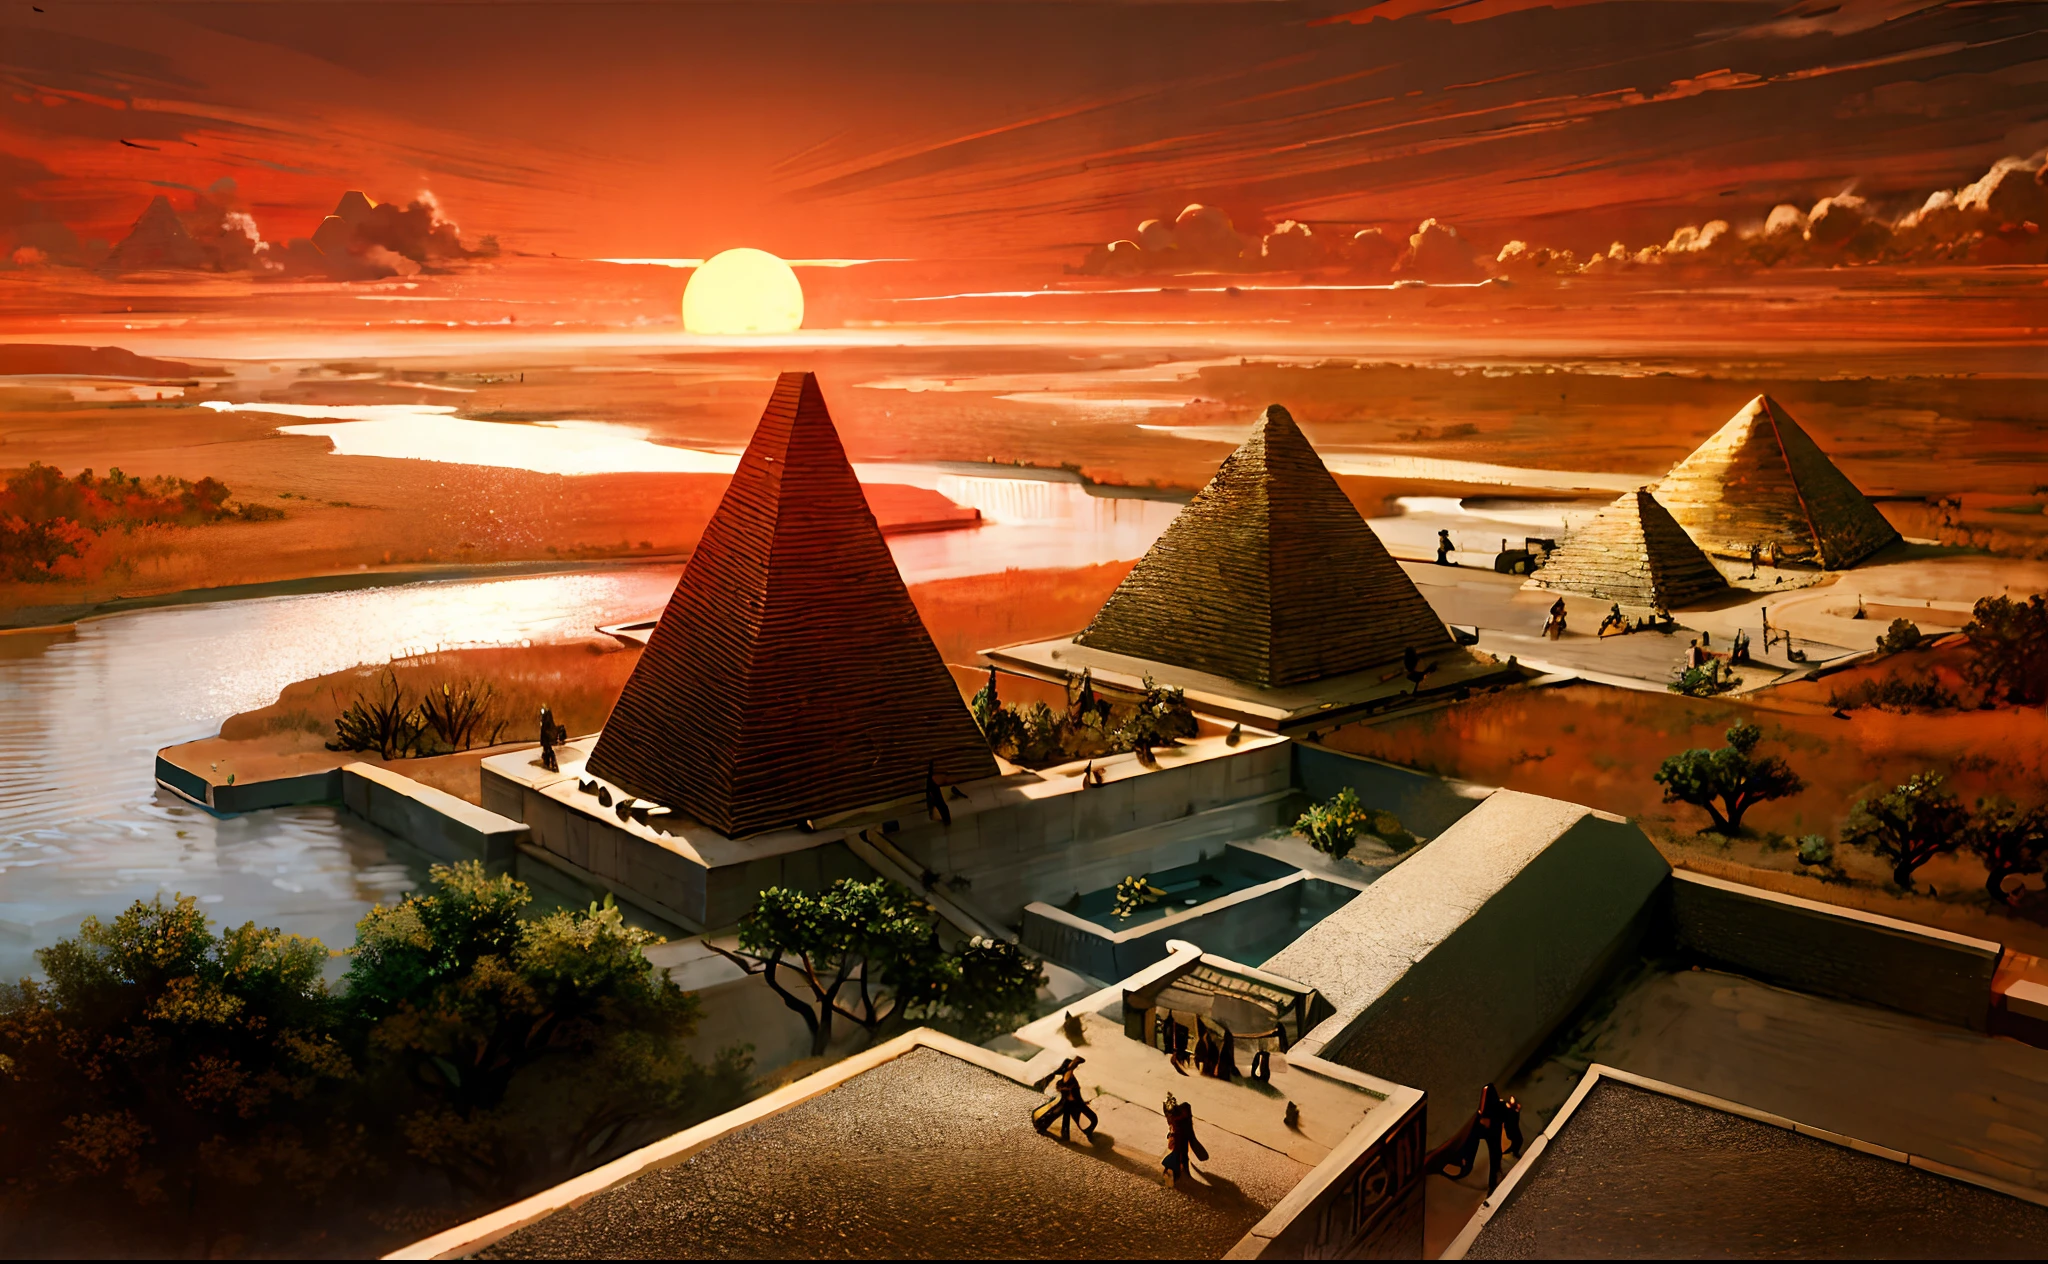 고대 이집트 문명，와이드 와이드 샷，나일 강，피라미드，지는 해，강은 수평선까지 뻗어있다，서사적 감각，웅장함